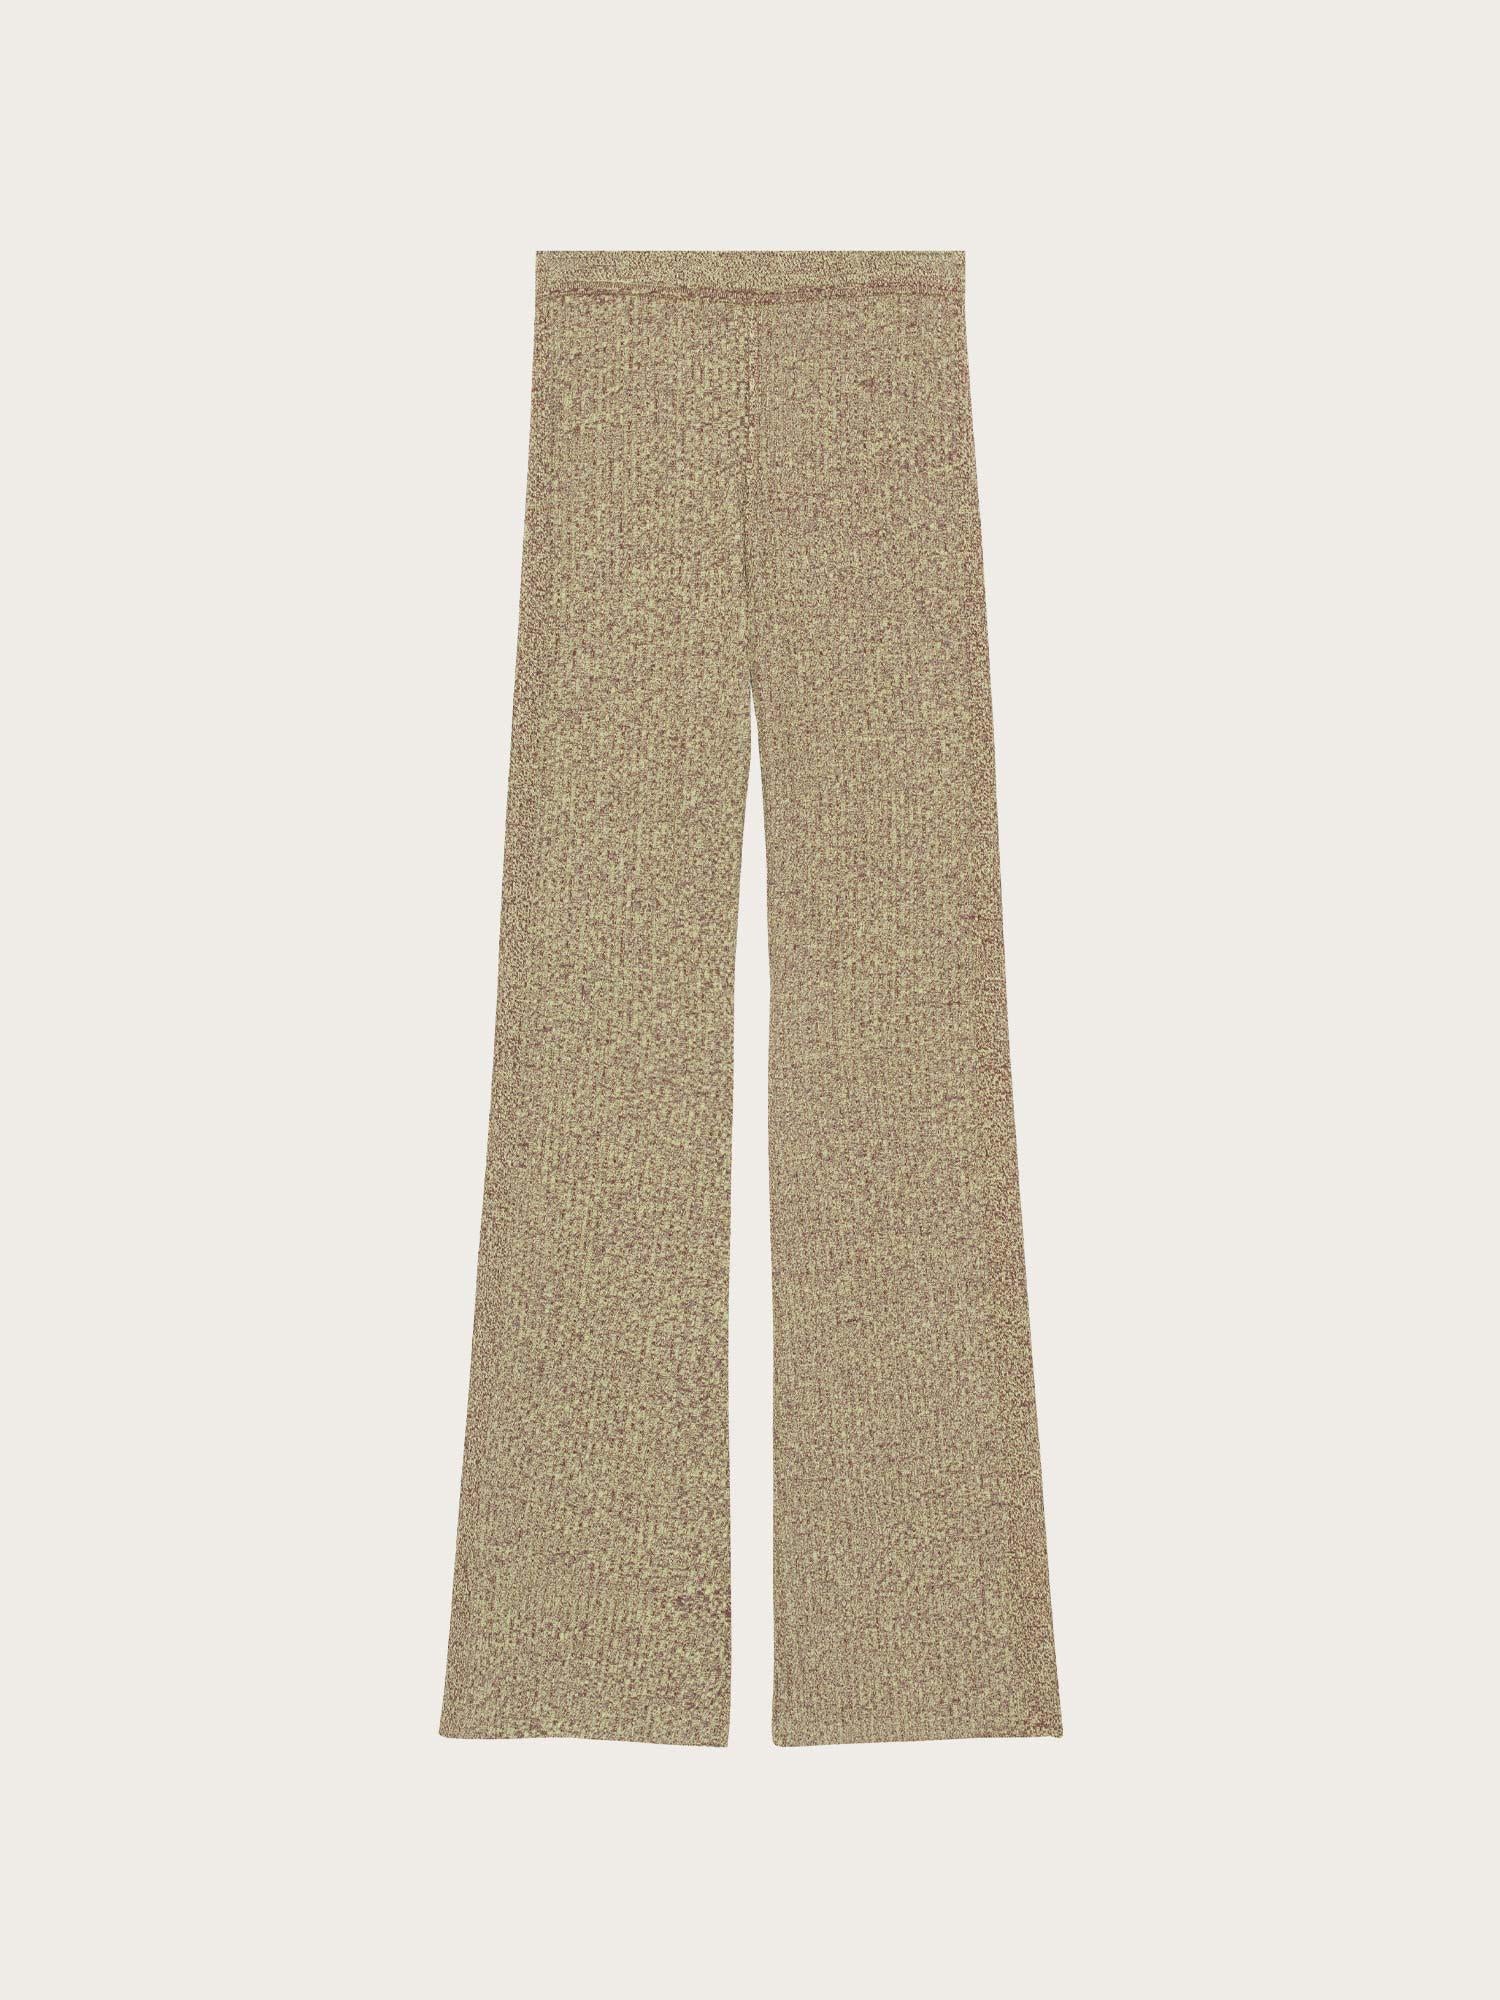 K1897 Melange Knit Pants - Brandy Brown